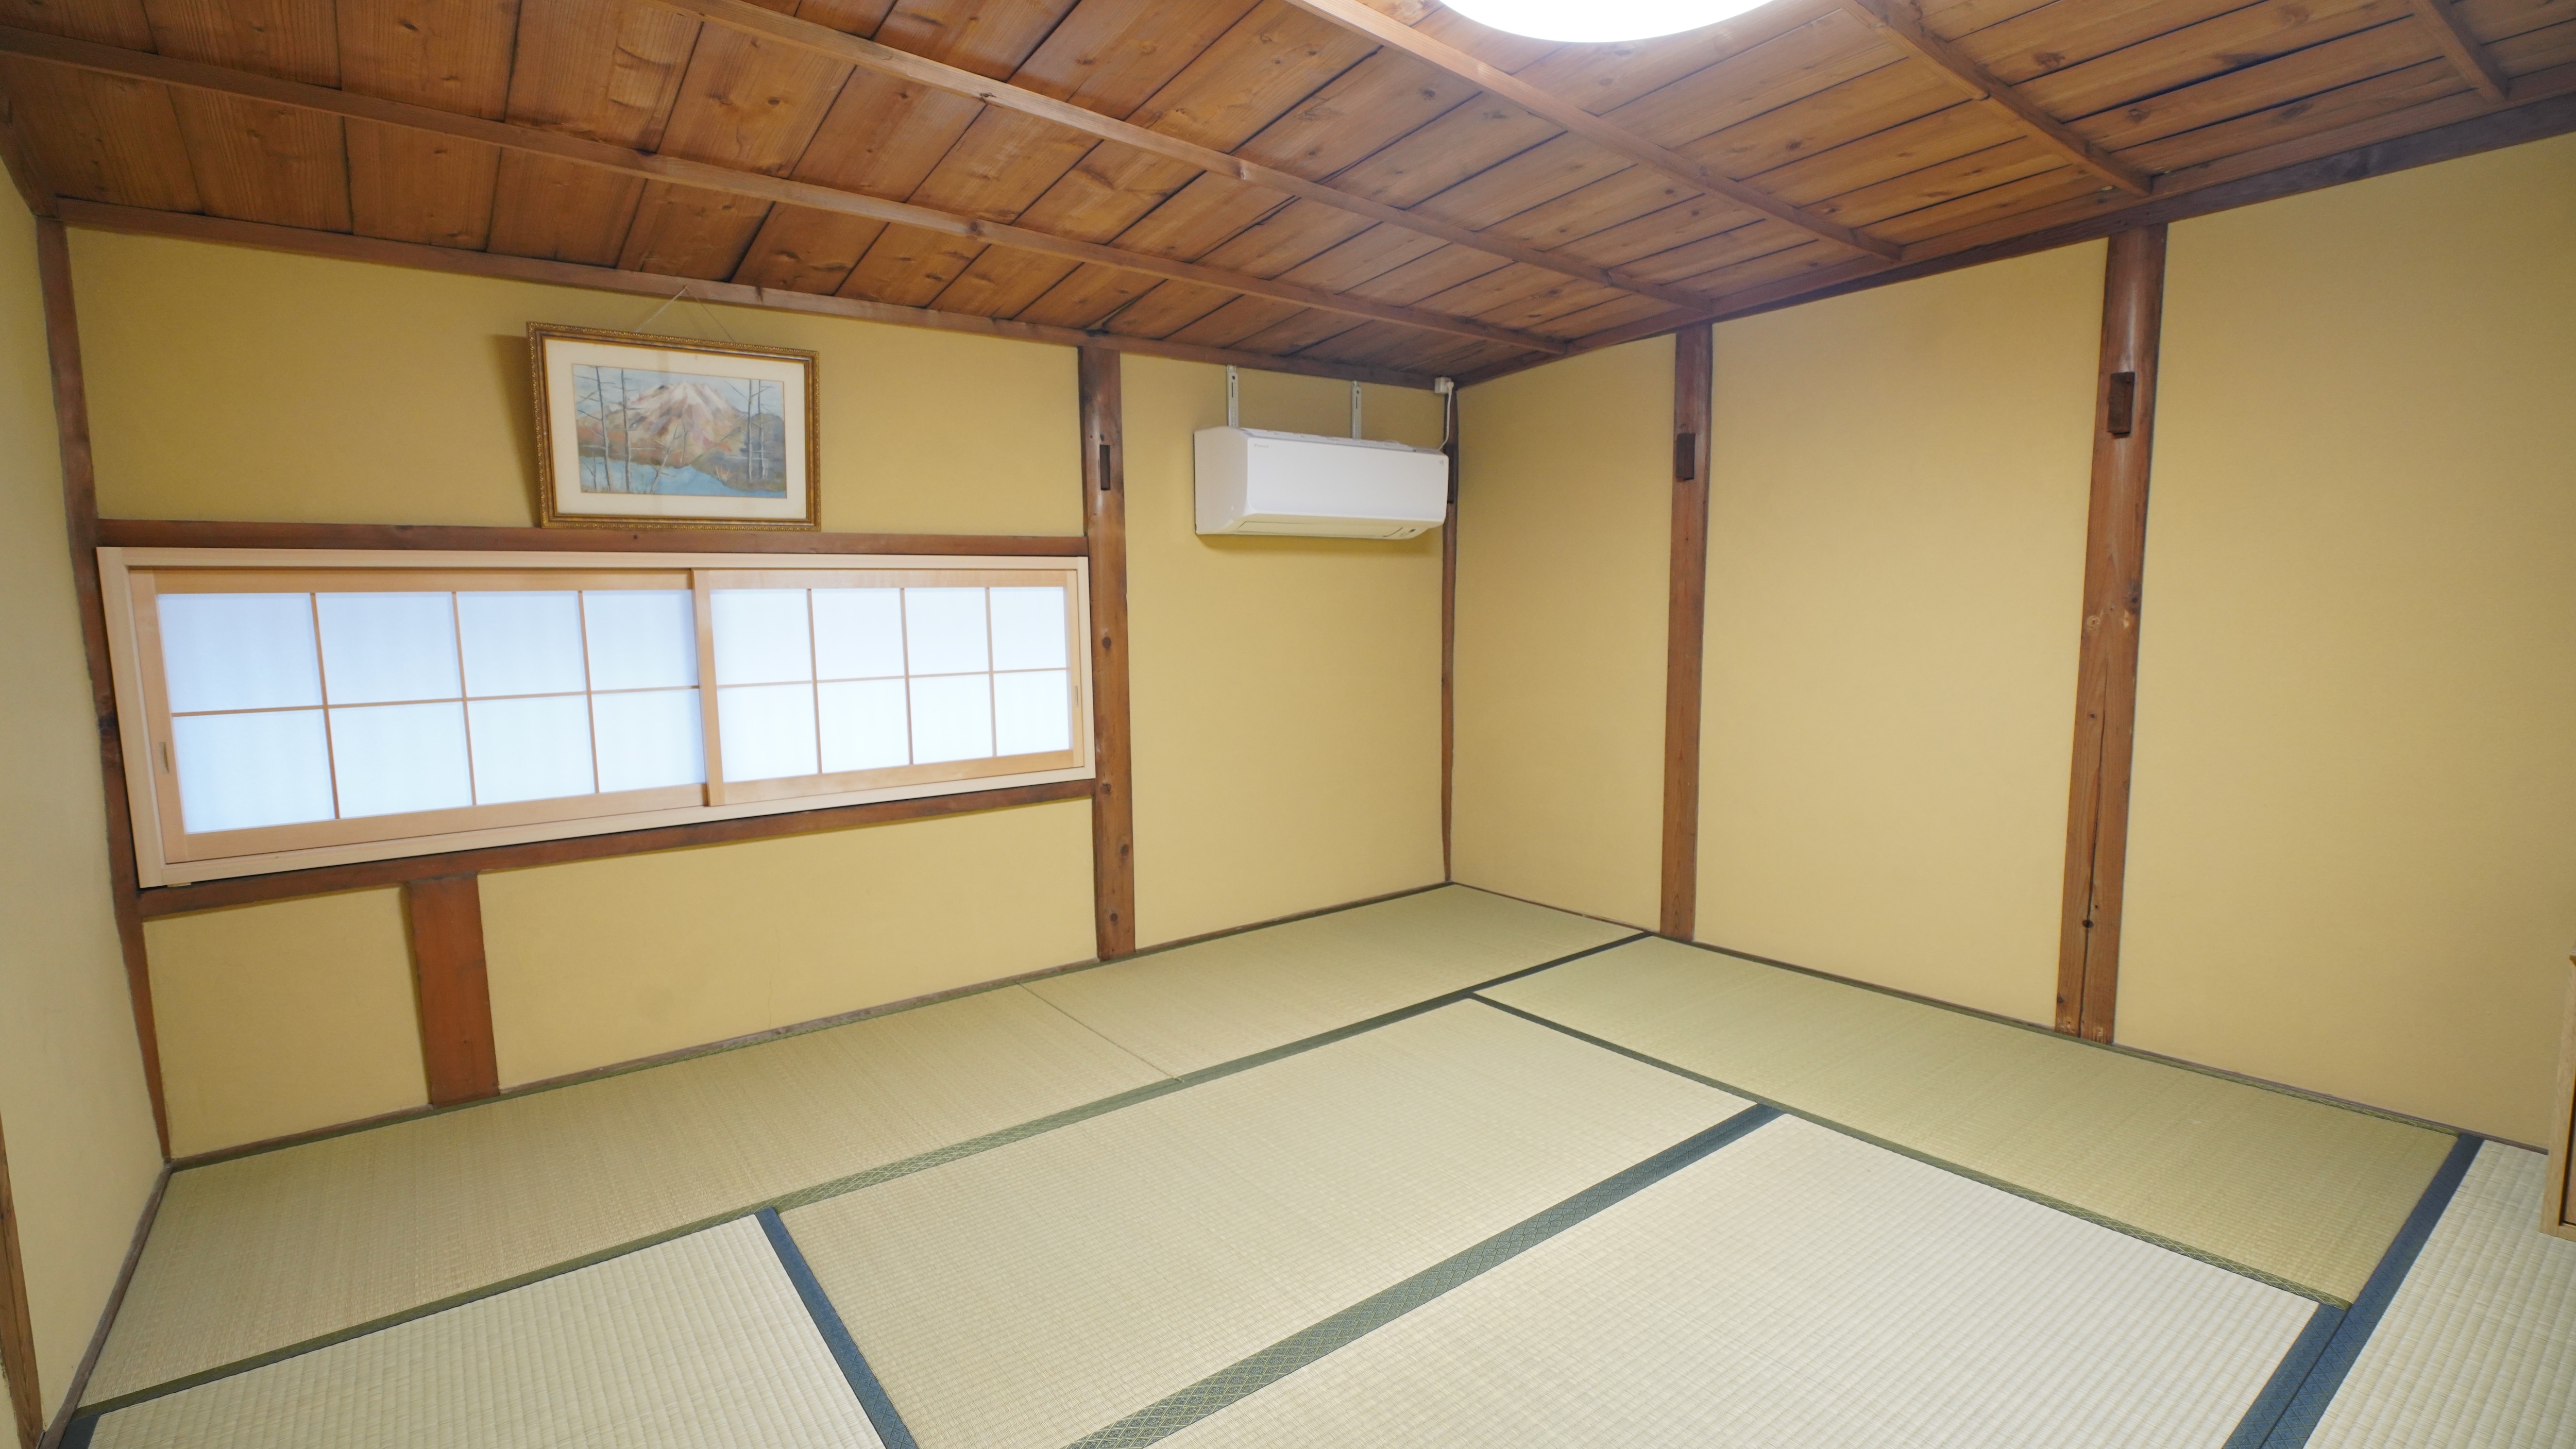 Second floor, Japanese-style triple room